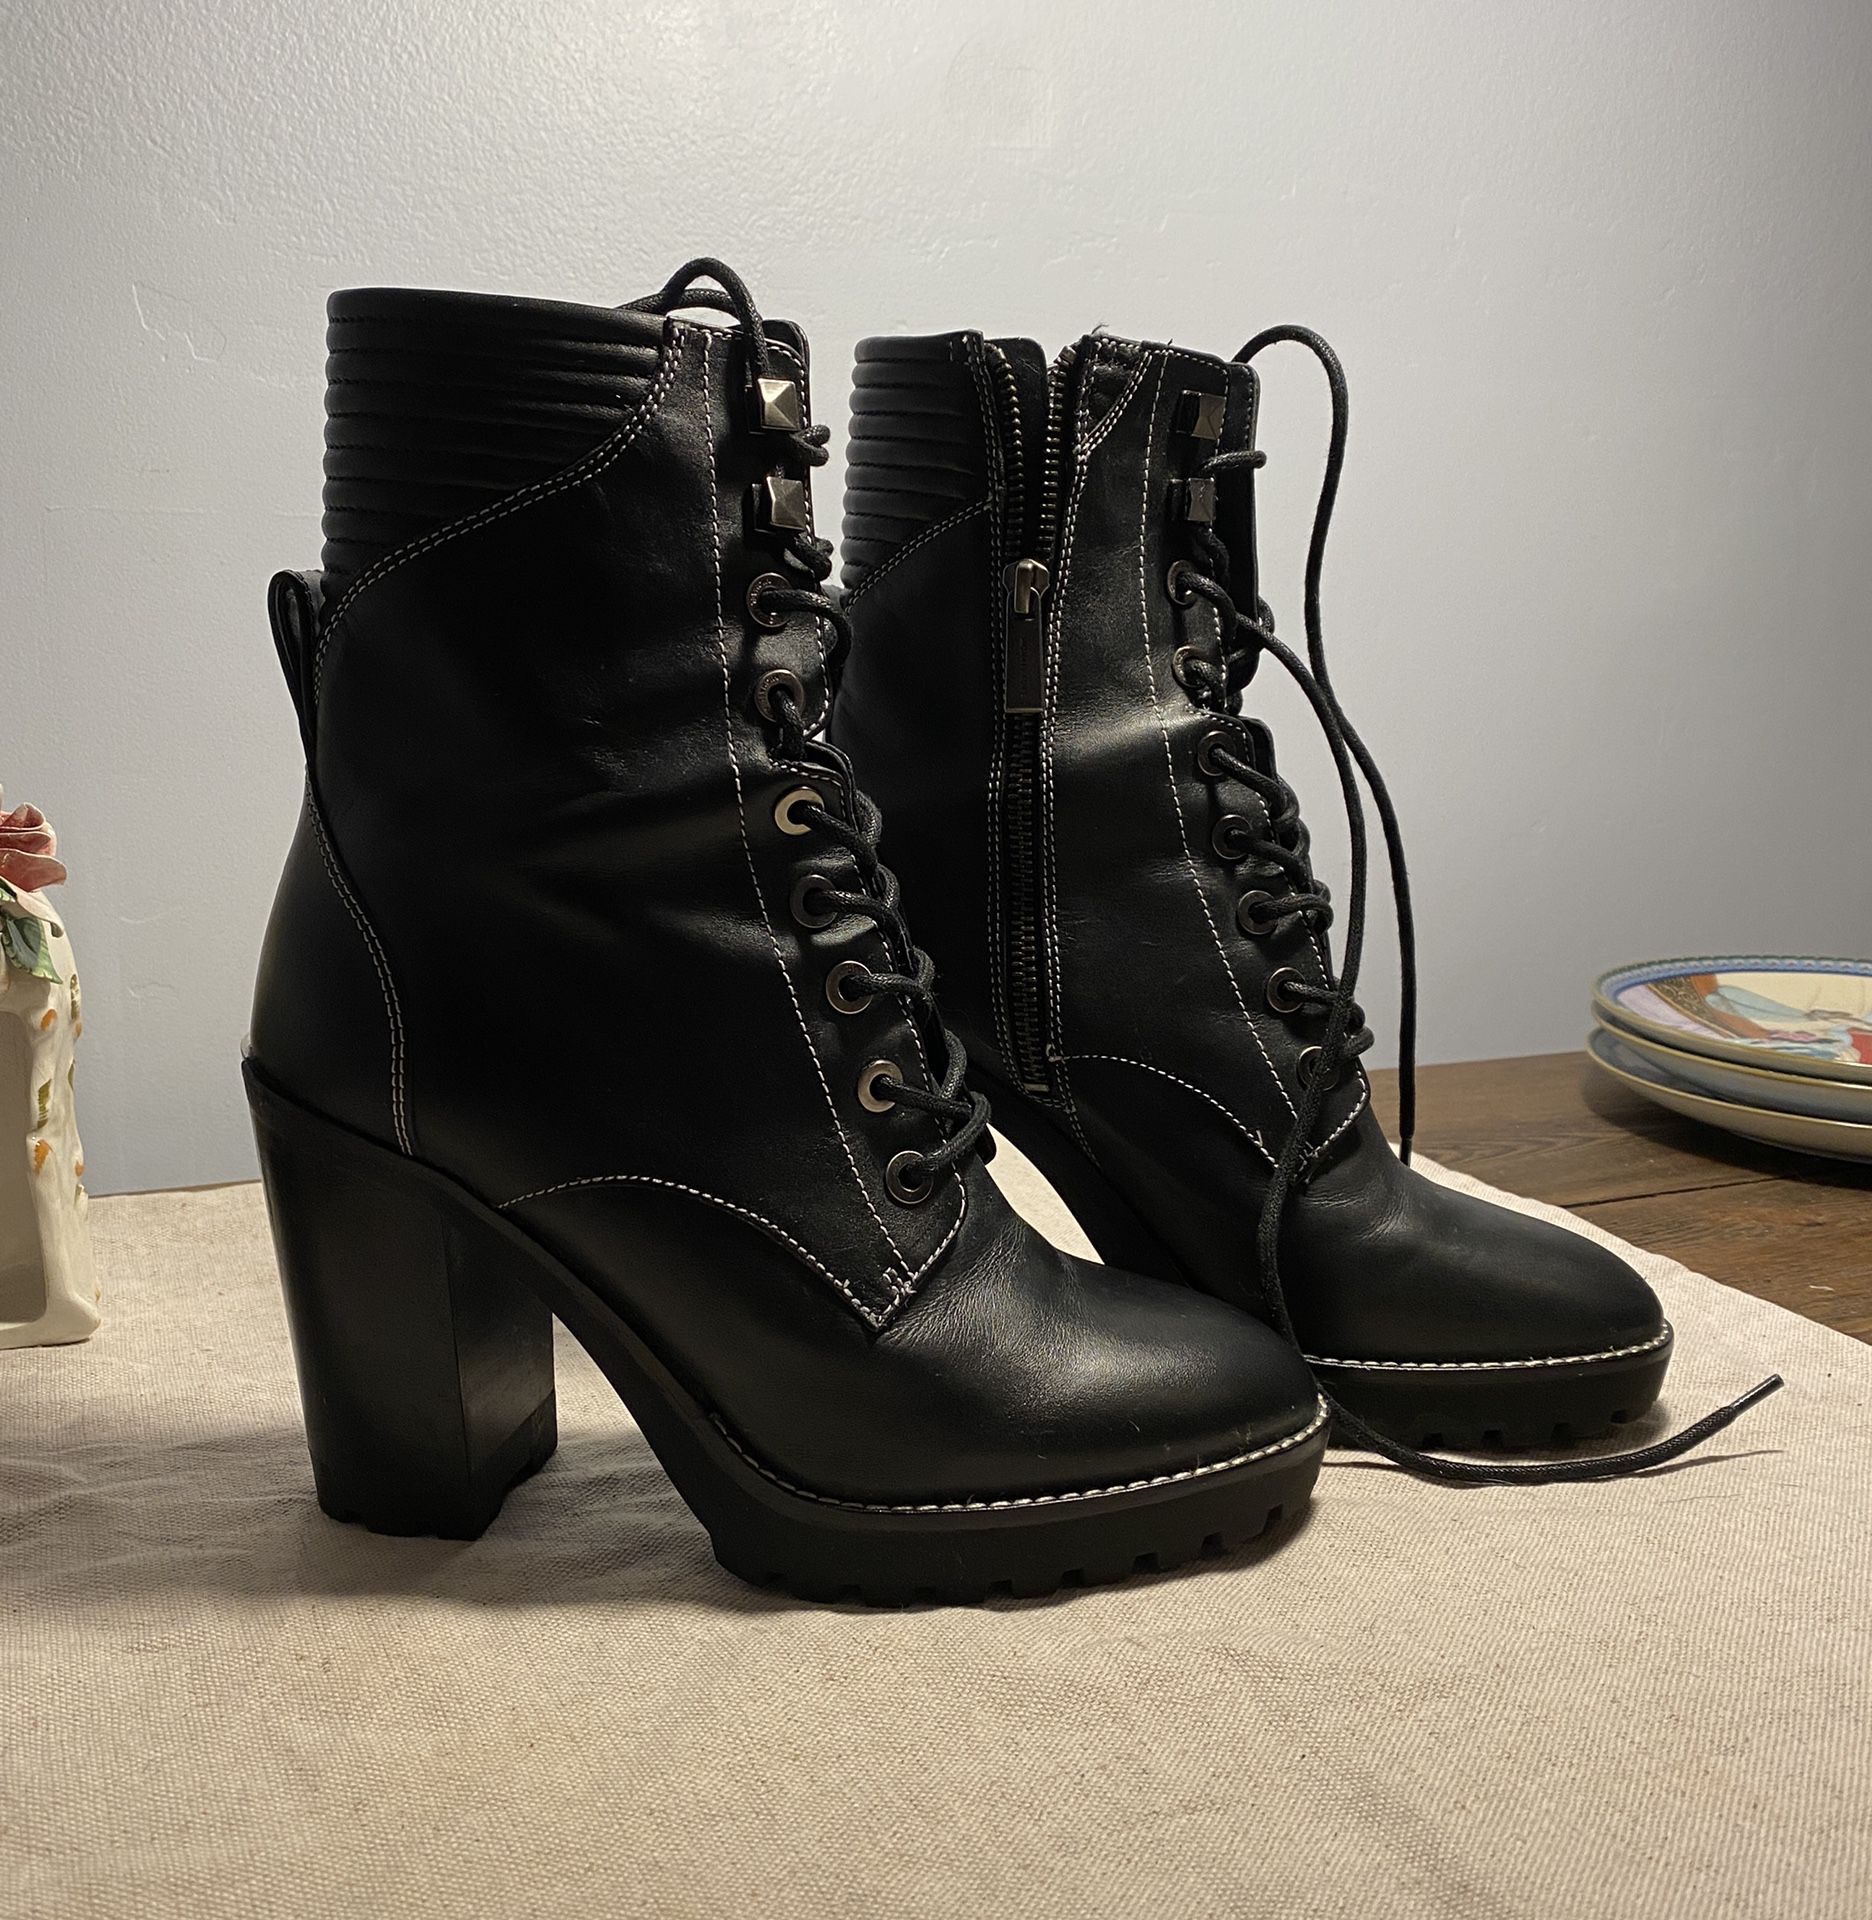 Black Michael Kors Heel Boots- Size 8 